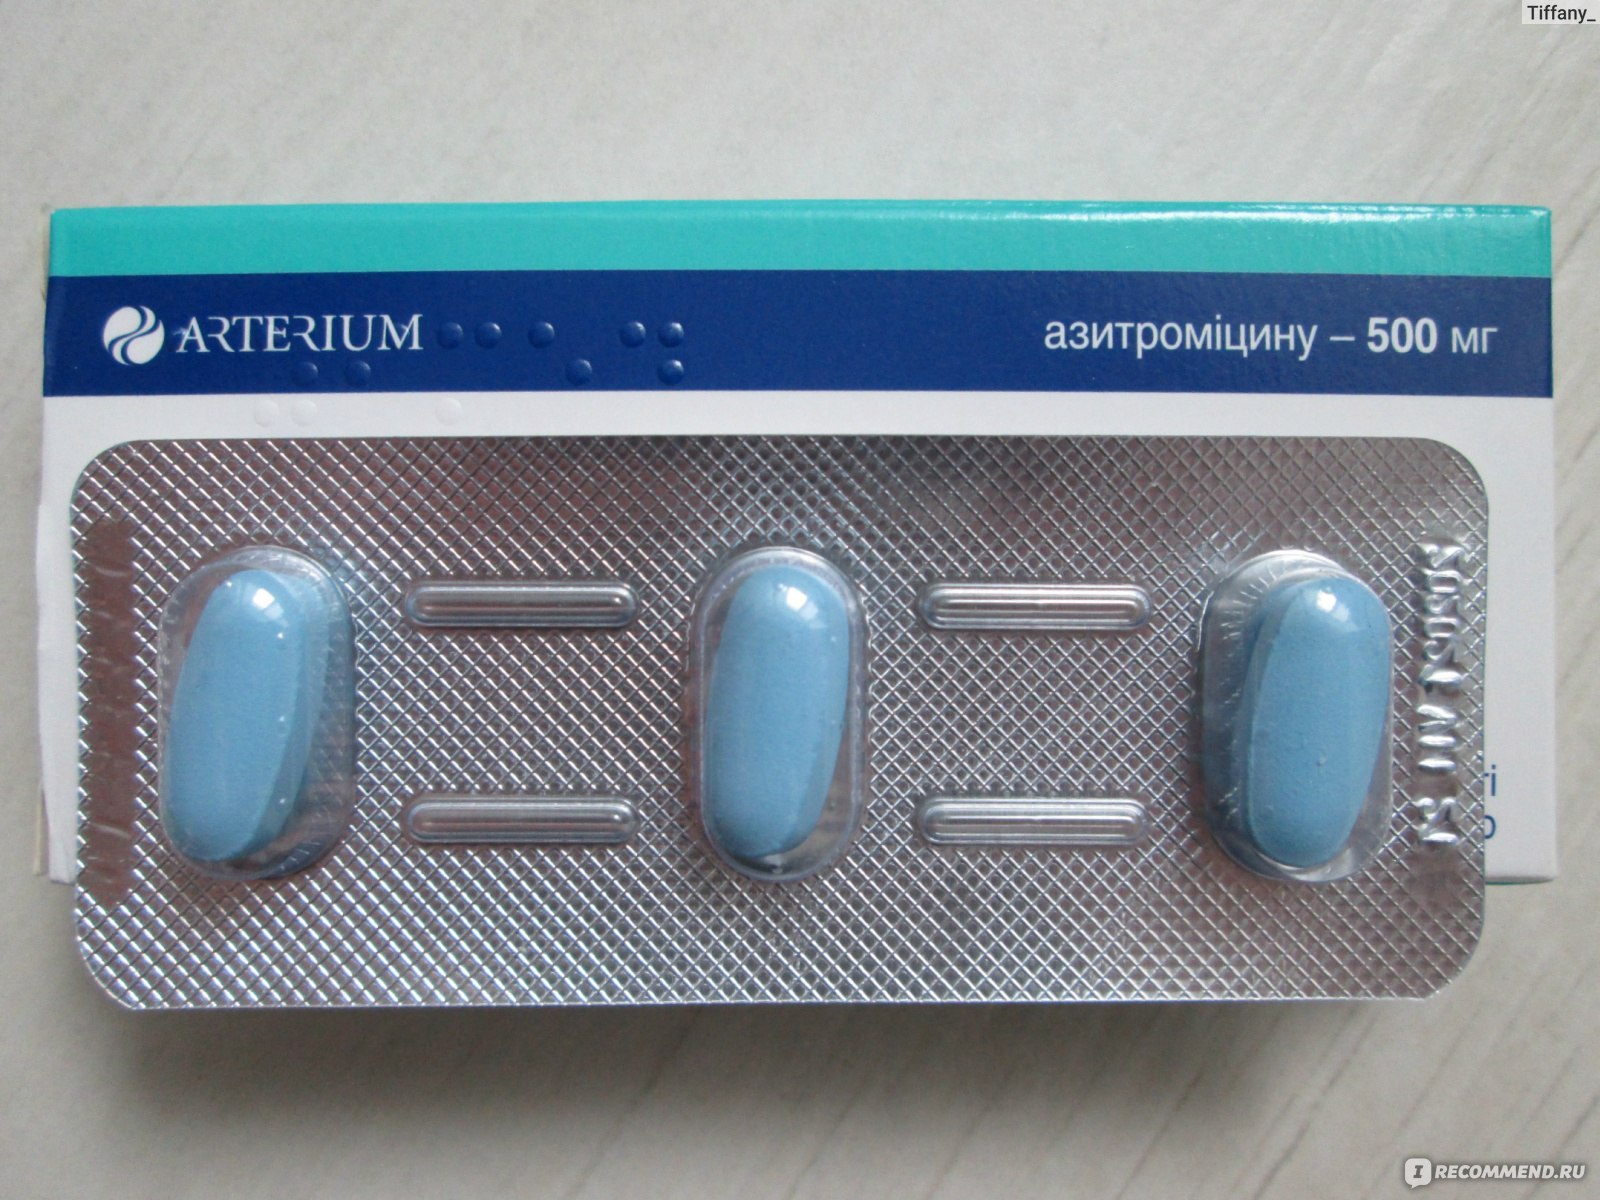 Антибиотик на букву с. Антибиотик три таблетки. Антибиотик голубые таблетки. Антибиотики в капсулах. Три таблетки в упаковке.